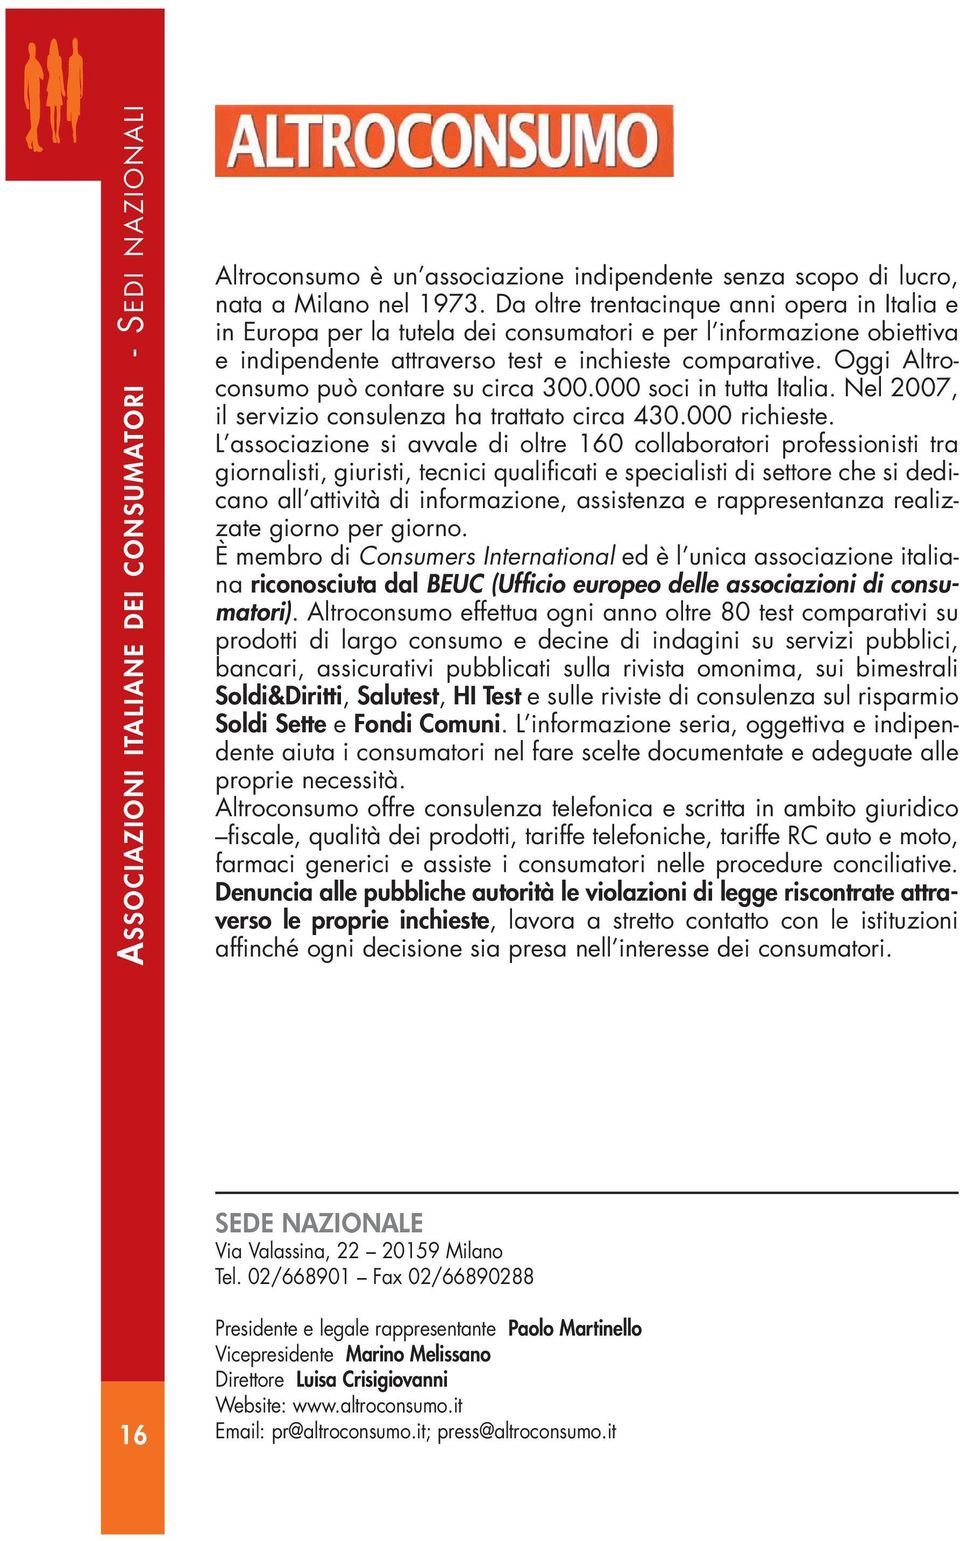 Oggi Altroconsumo può contare su circa 300.000 soci in tutta Italia. Nel 2007, il servizio consulenza ha trattato circa 430.000 richieste.